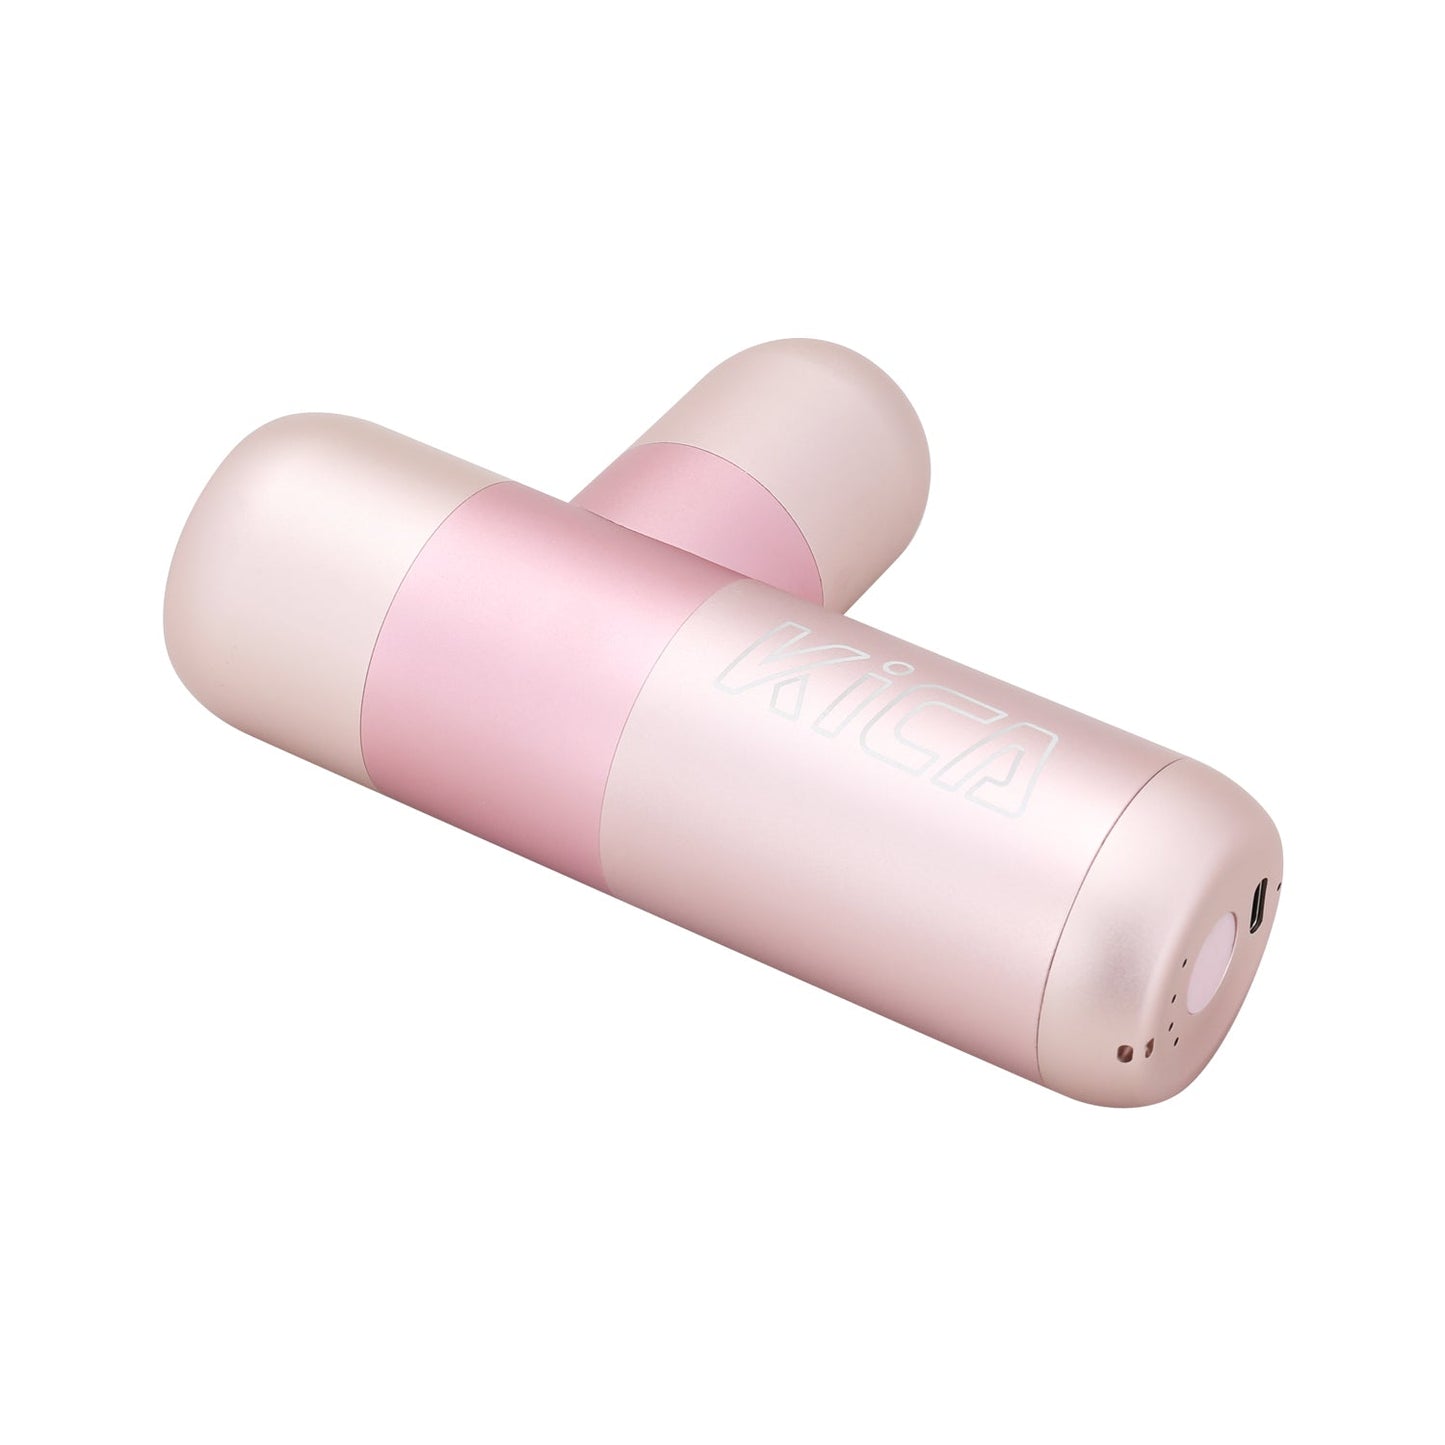 FeiyuTech Kica K2 Deep Tissue Percussive Massage Gun (Pink)